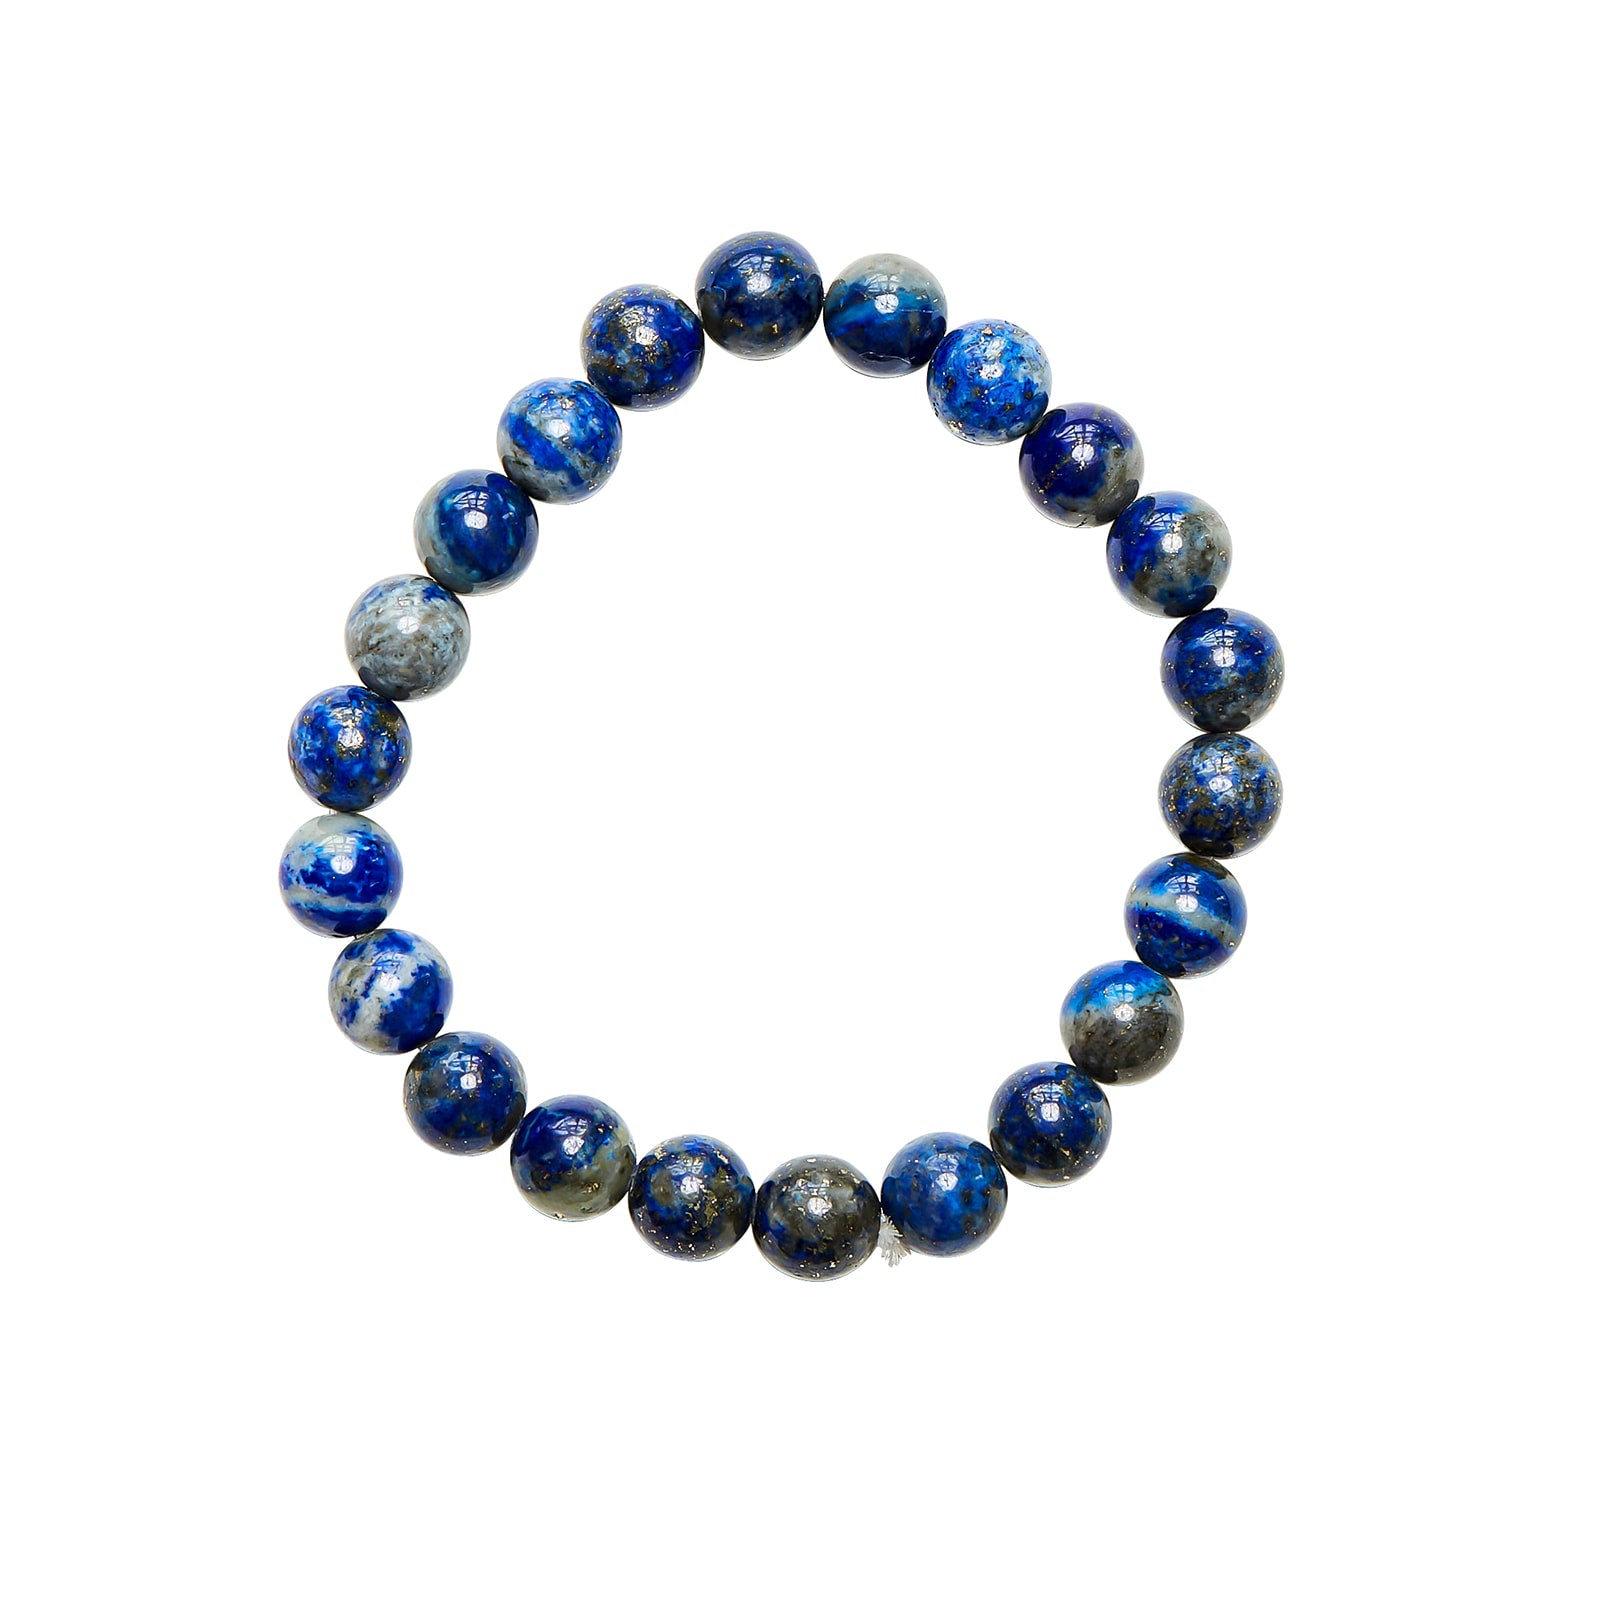 Ambarya Wisdom - Lapis Lazuli Mala Bead Bracelet on white background